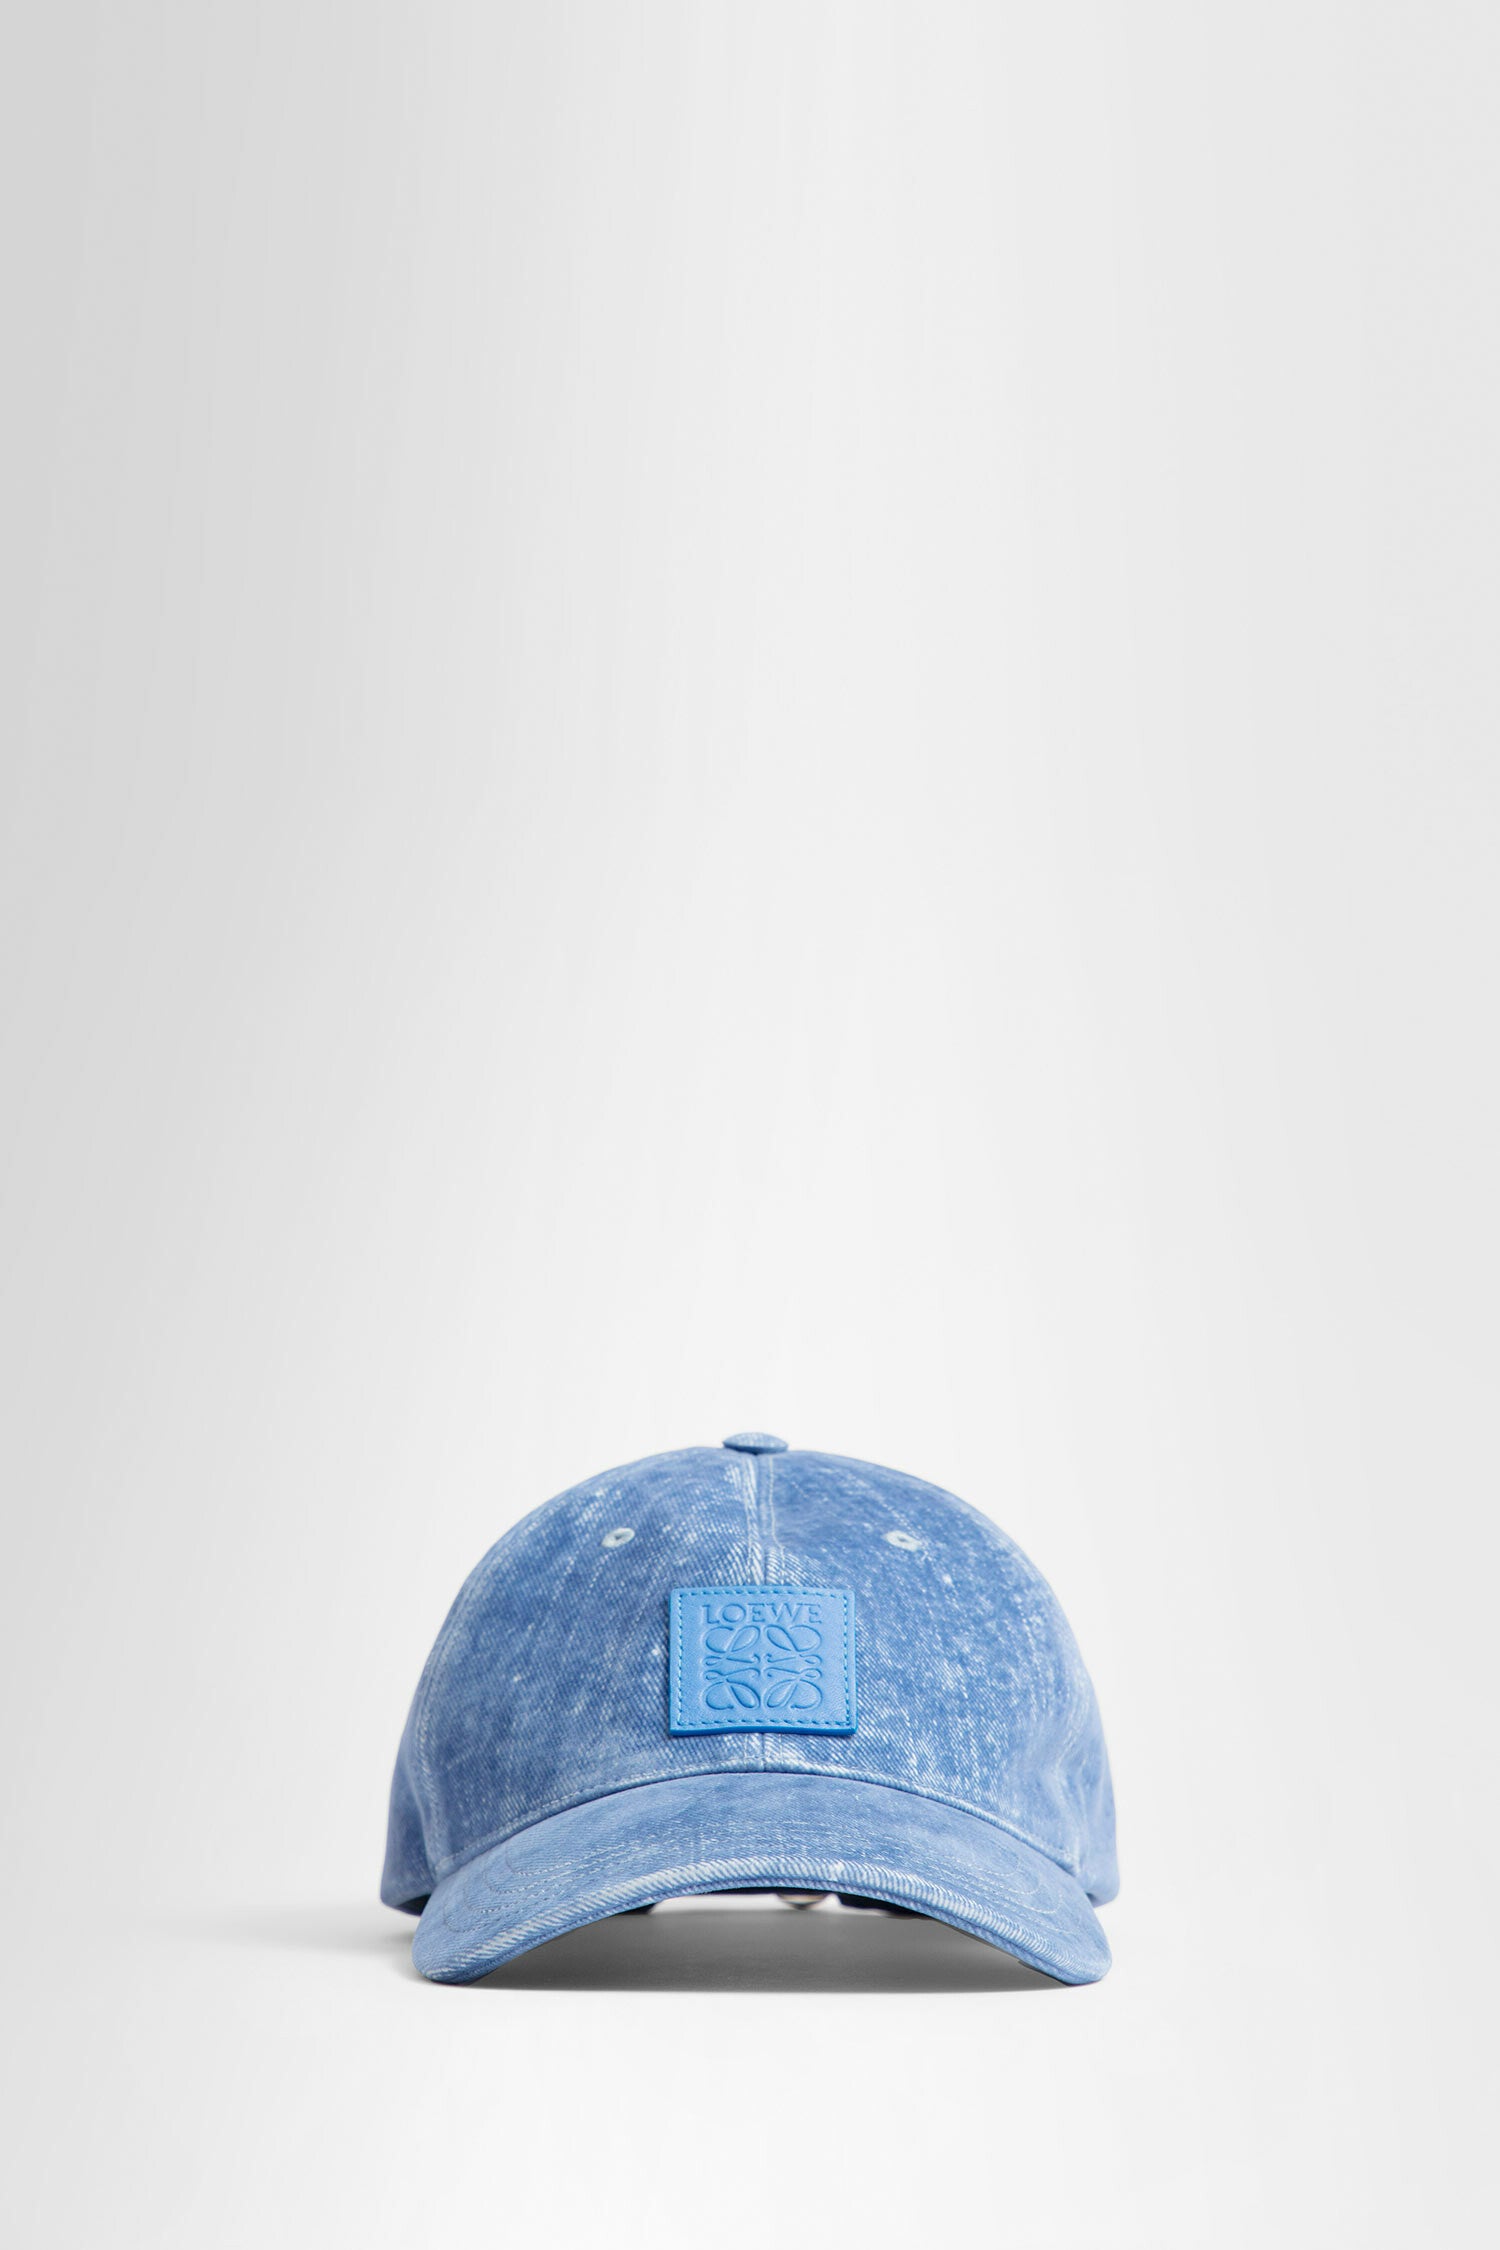 LOEWE UNISEX BLUE HATS - LOEWE - HATS | Antonioli